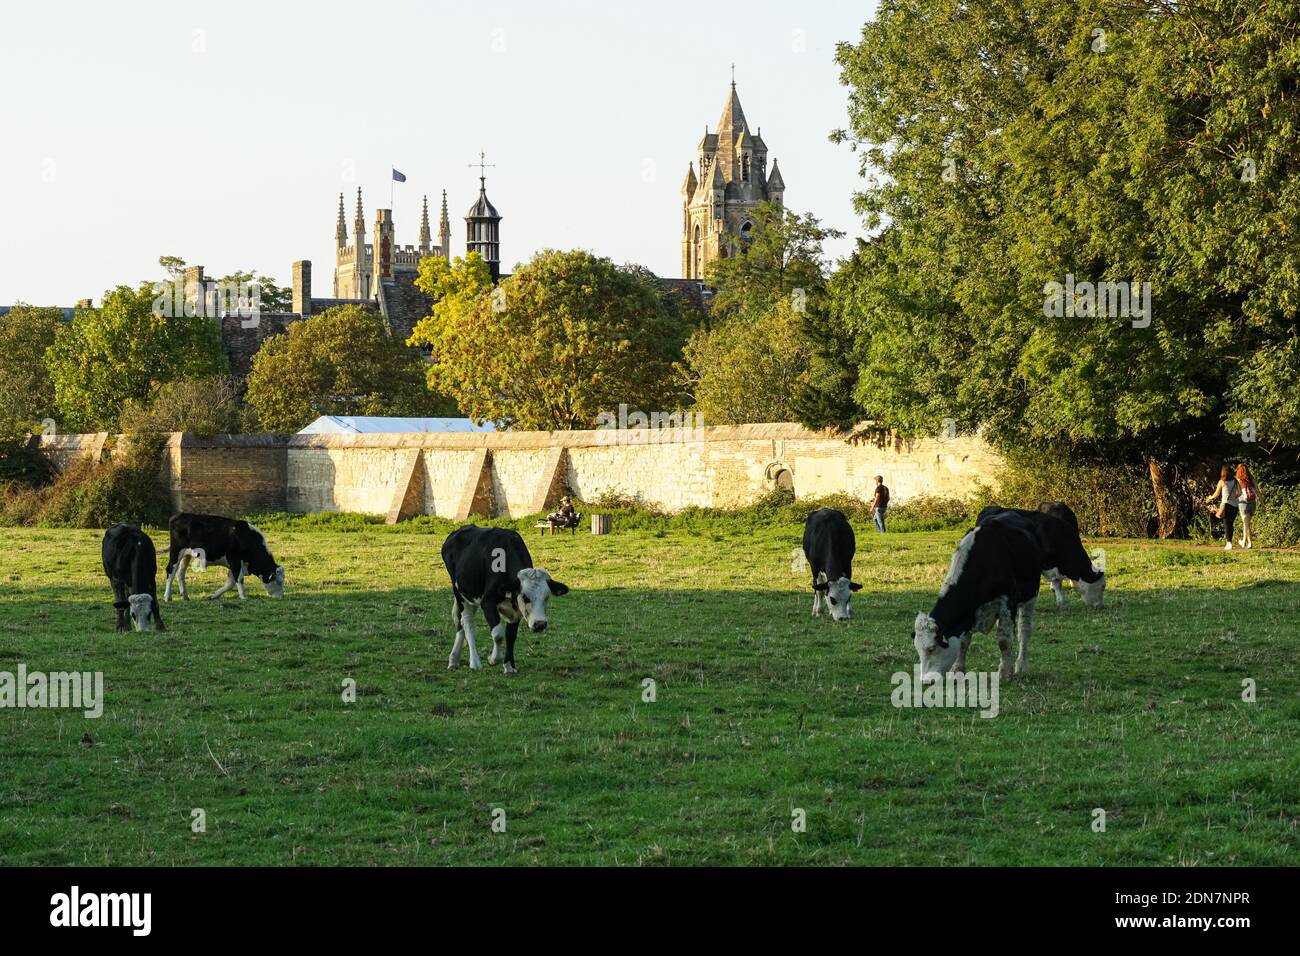 Les vaches Hereford paissent dans un pâturage à Cambridge Cambridgeshire en Angleterre Royaume-Uni Royaume-Uni Banque D'Images